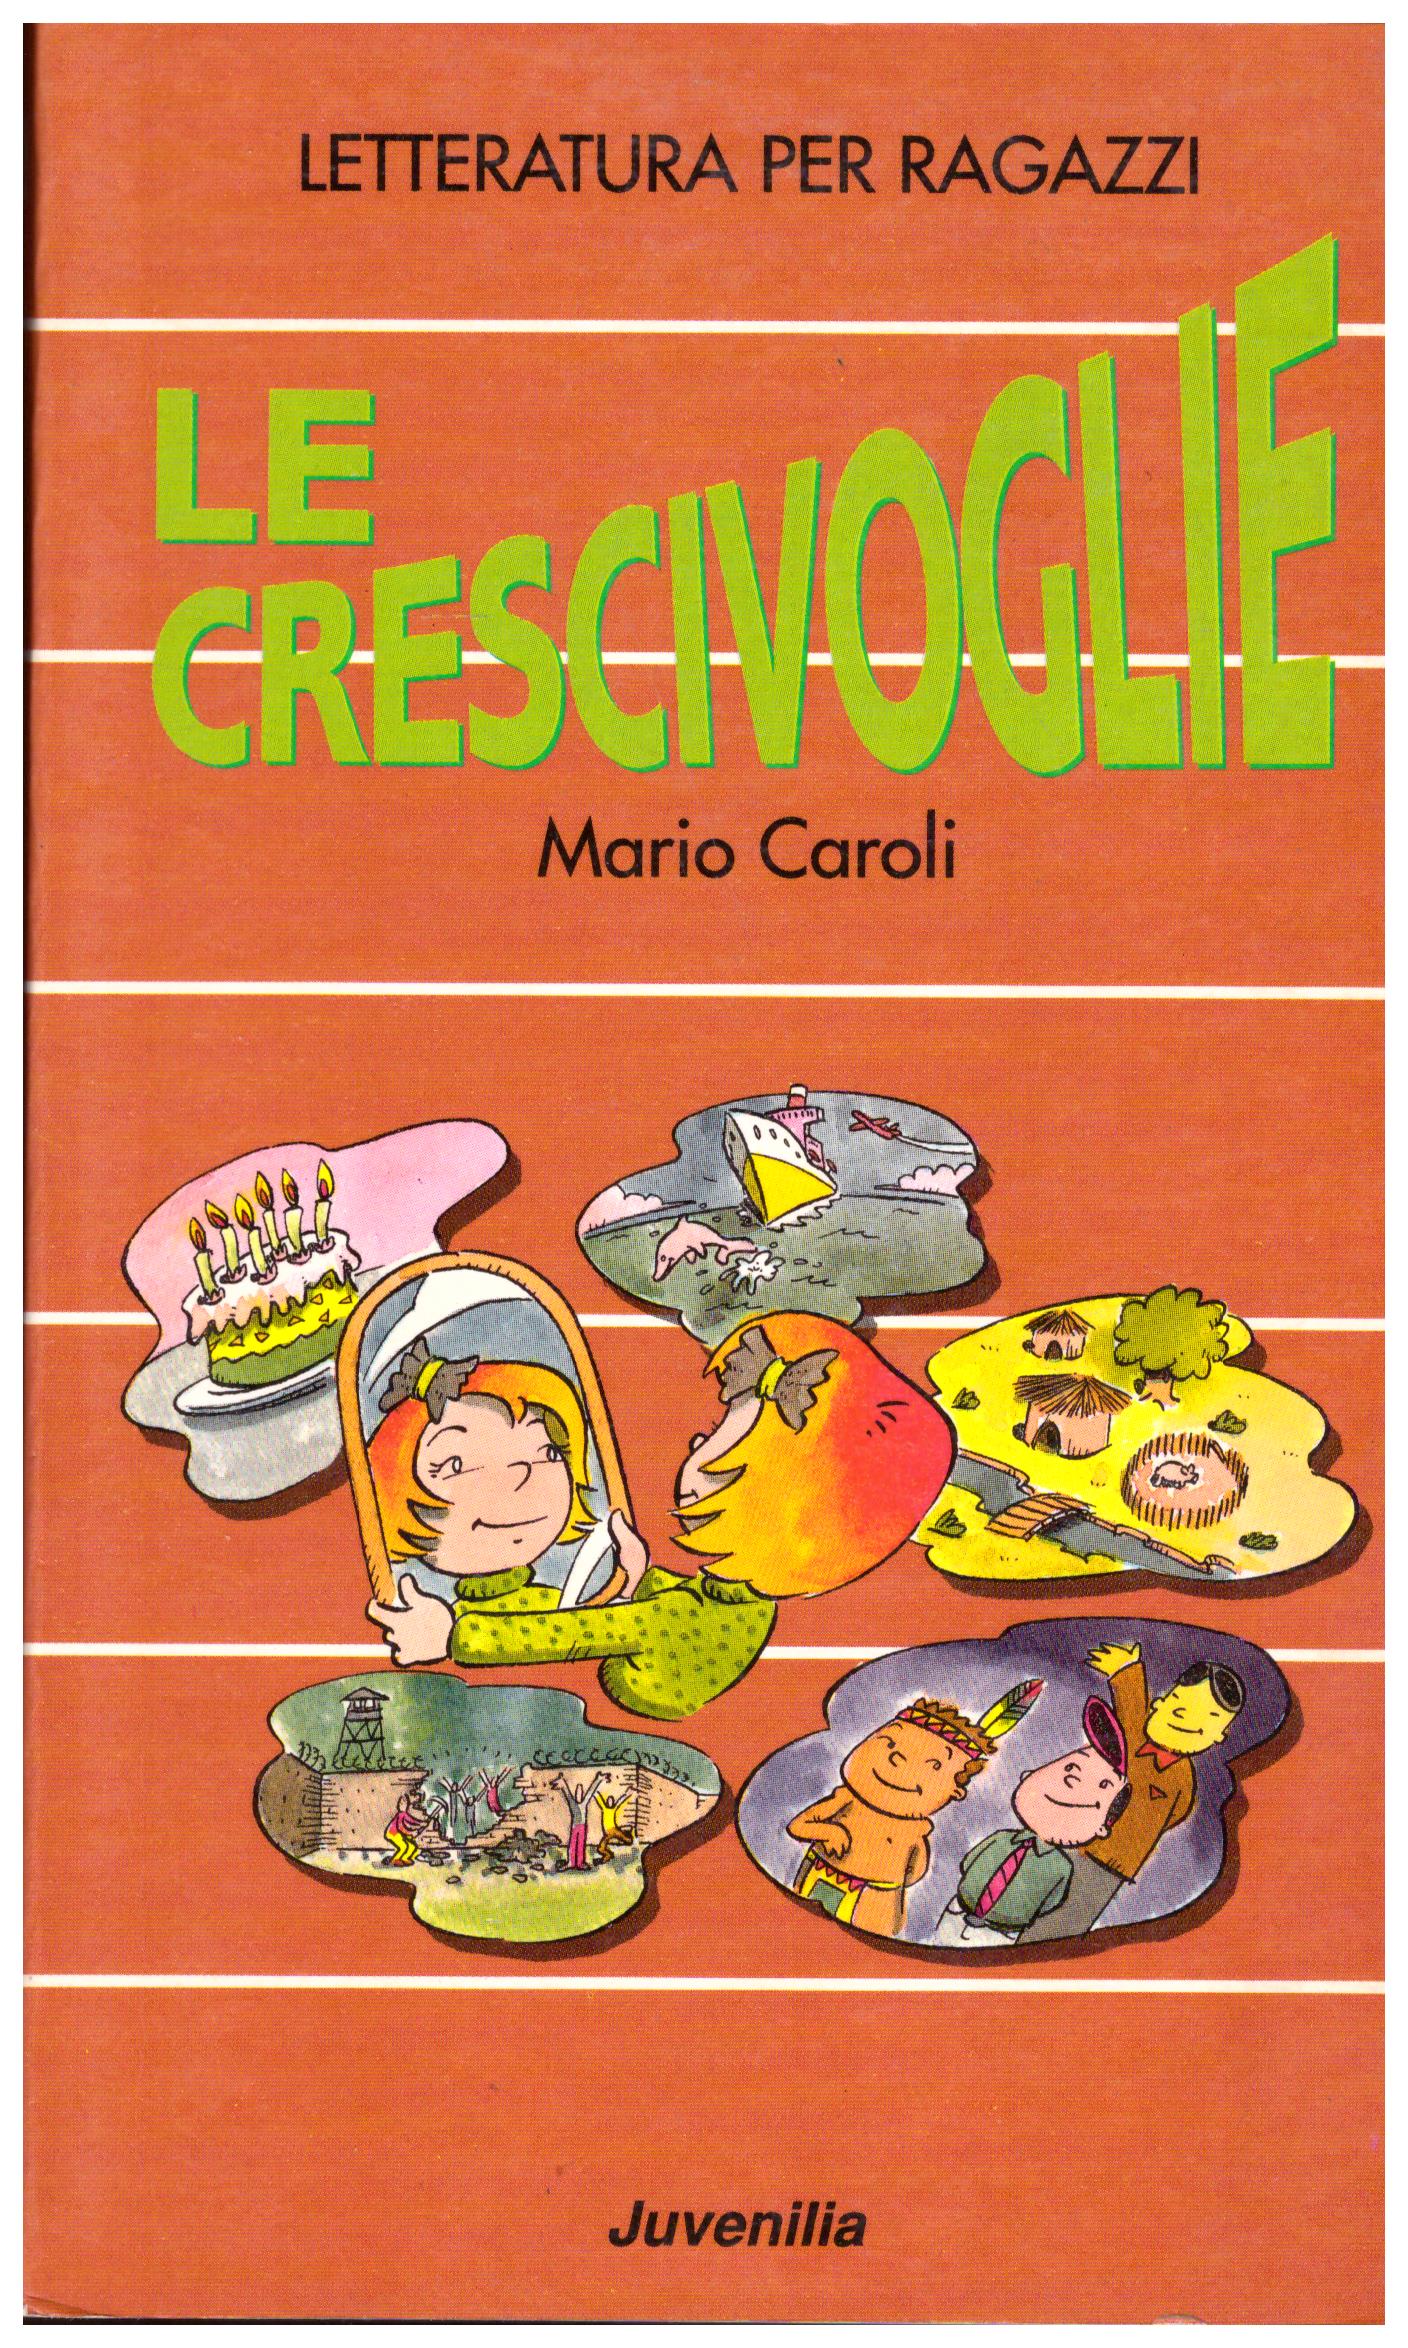 Titolo: Le crescivoglie    Autore: Mario Caroli    Editore: Juvenilia